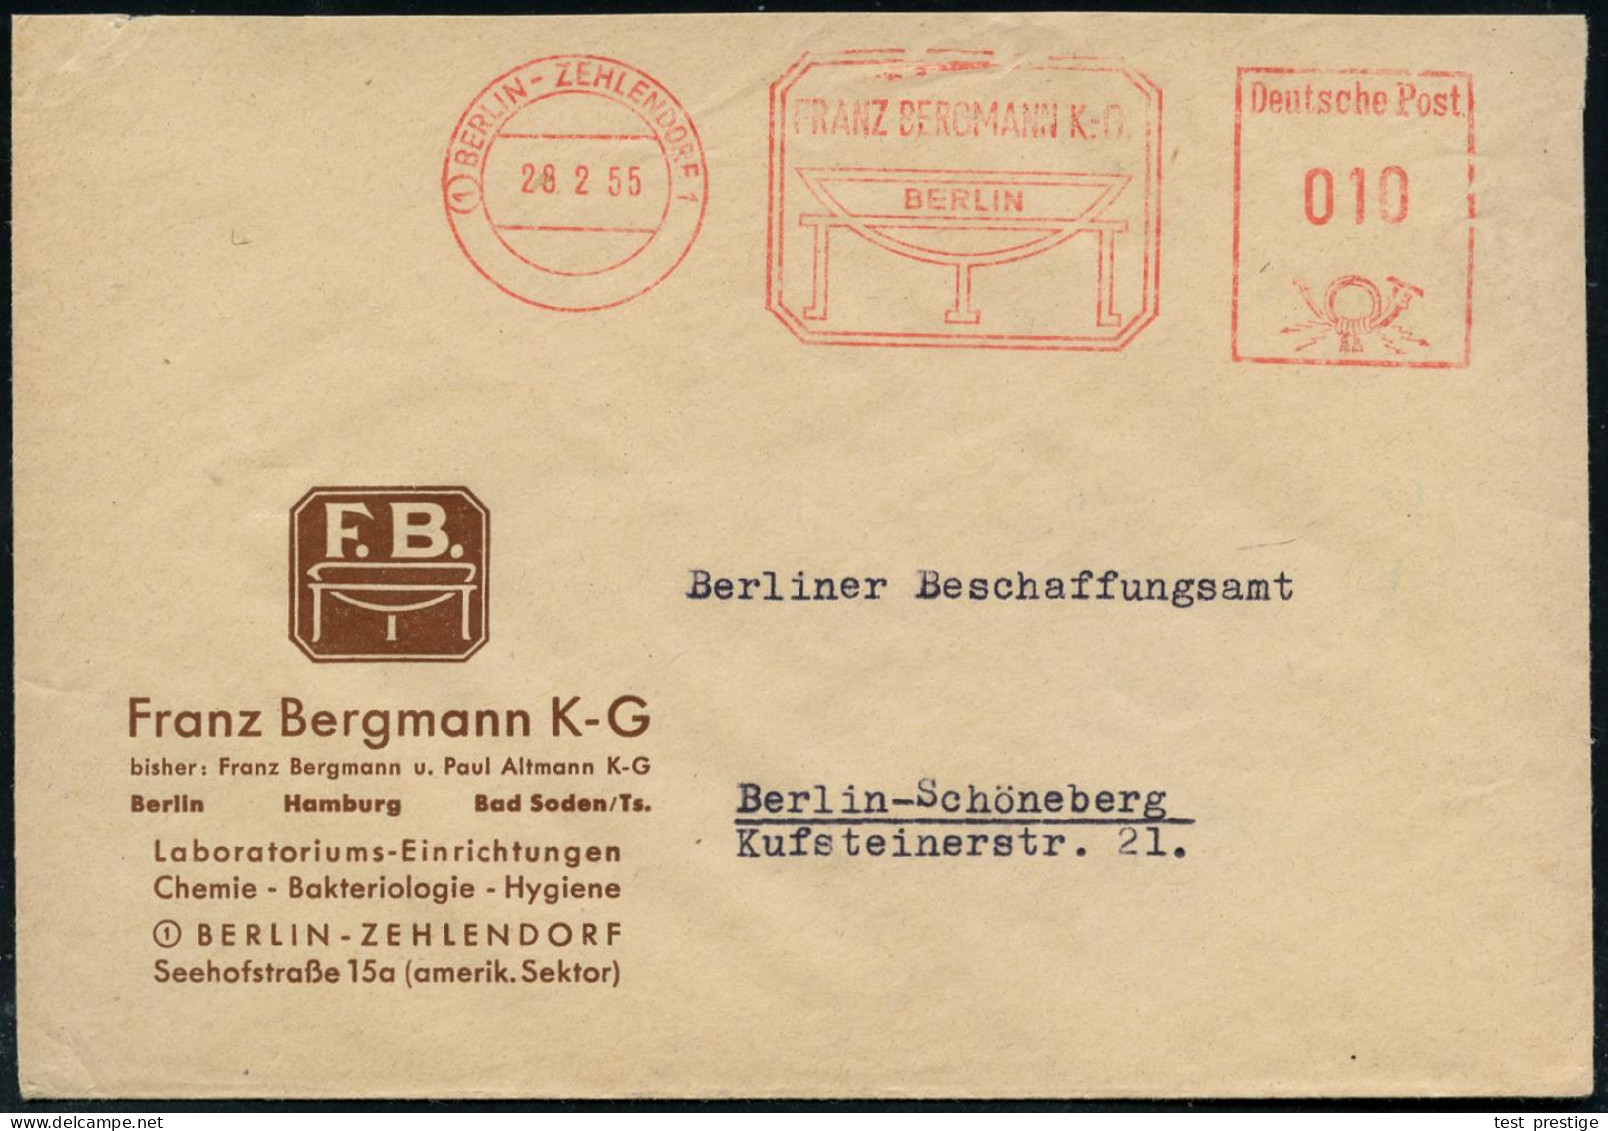 (1) BERLIN-ZEHLENDORF 1/ FRANZ BERGMANN KG. 1953 (12.11.) AFS (Schalen-Logo) Motivgl. Firmen-Bf.: Labora-toriums-Einrich - Medizin